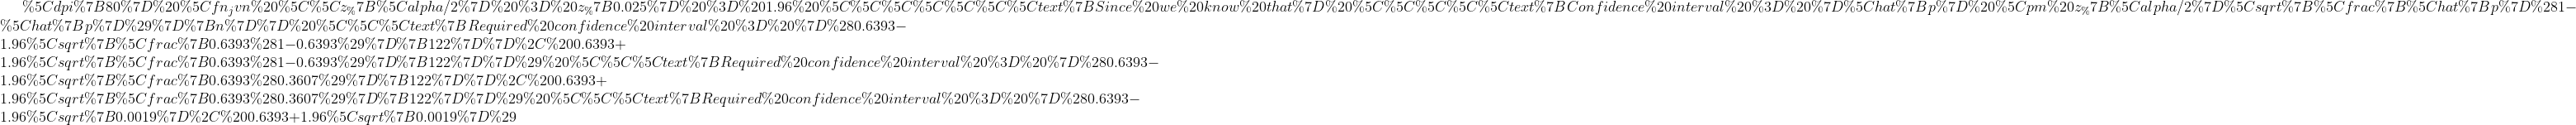 \\z_{\alpha/2} = z_{0.025} = 1.96 \\\\\\\text{Since we know that} \\\\\text{Confidence interval = }\hat{p} \pm z_{\alpha/2}\sqrt{\frac{\hat{p}(1-\hat{p})}{n}} \\\text{Required confidence interval = }(0.6393-1.96\sqrt{\frac{0.6393(1-0.6393)}{122}}, 0.6393+1.96\sqrt{\frac{0.6393(1-0.6393)}{122}}) \\\text{Required confidence interval = }(0.6393-1.96\sqrt{\frac{0.6393(0.3607)}{122}}, 0.6393+1.96\sqrt{\frac{0.6393(0.3607)}{122}}) \\\text{Required confidence interval = }(0.6393-1.96\sqrt{0.0019}, 0.6393+1.96\sqrt{0.0019})